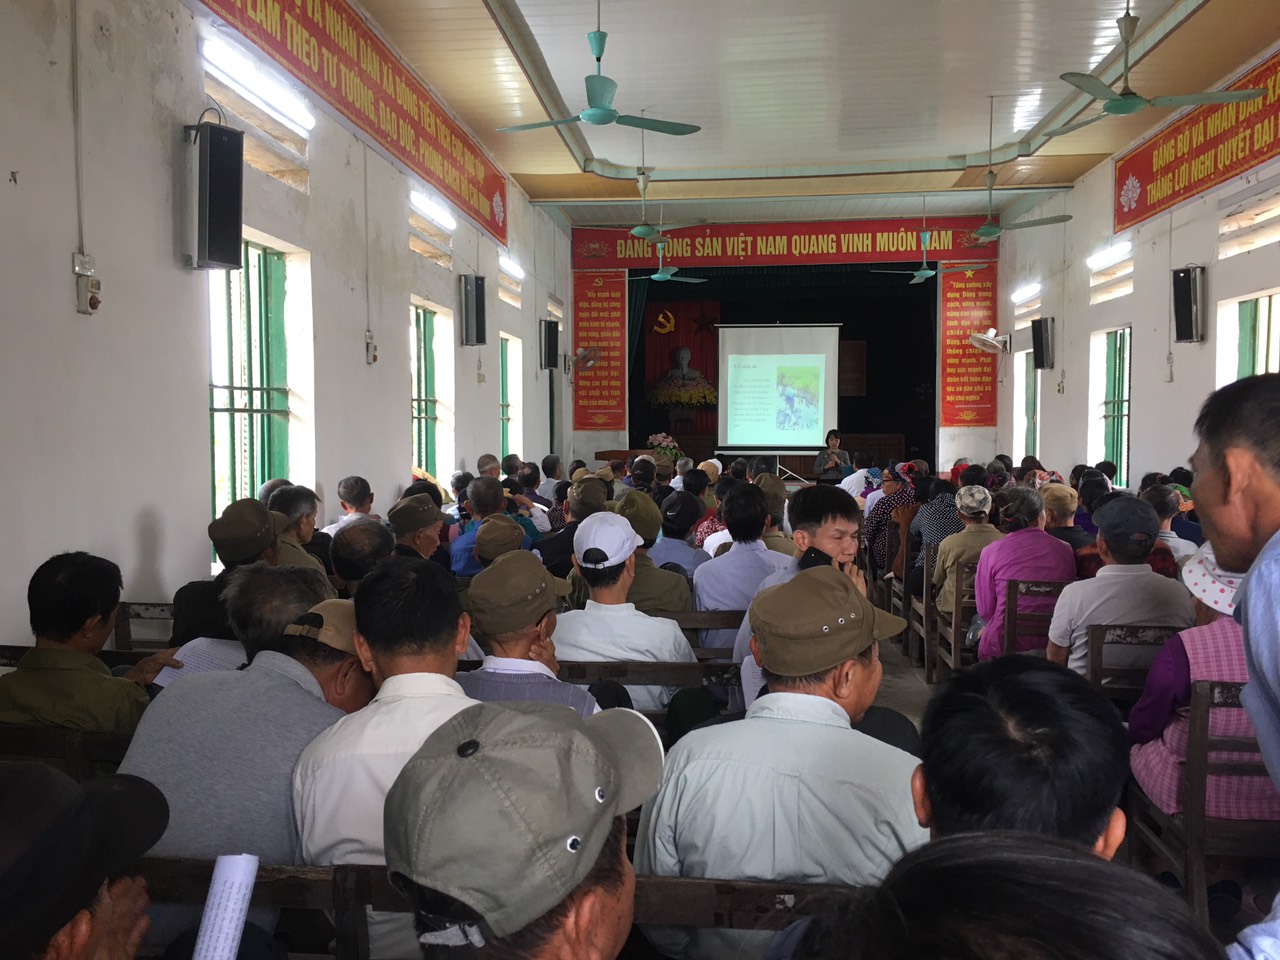 Liên minh HTX tỉnh tổ chức Hội nghị tuyên truyền về bảo vệ môi trường  tại các huyện: Thái Thụy, Quỳnh Phụ, Kiến Xương và Tiền Hải